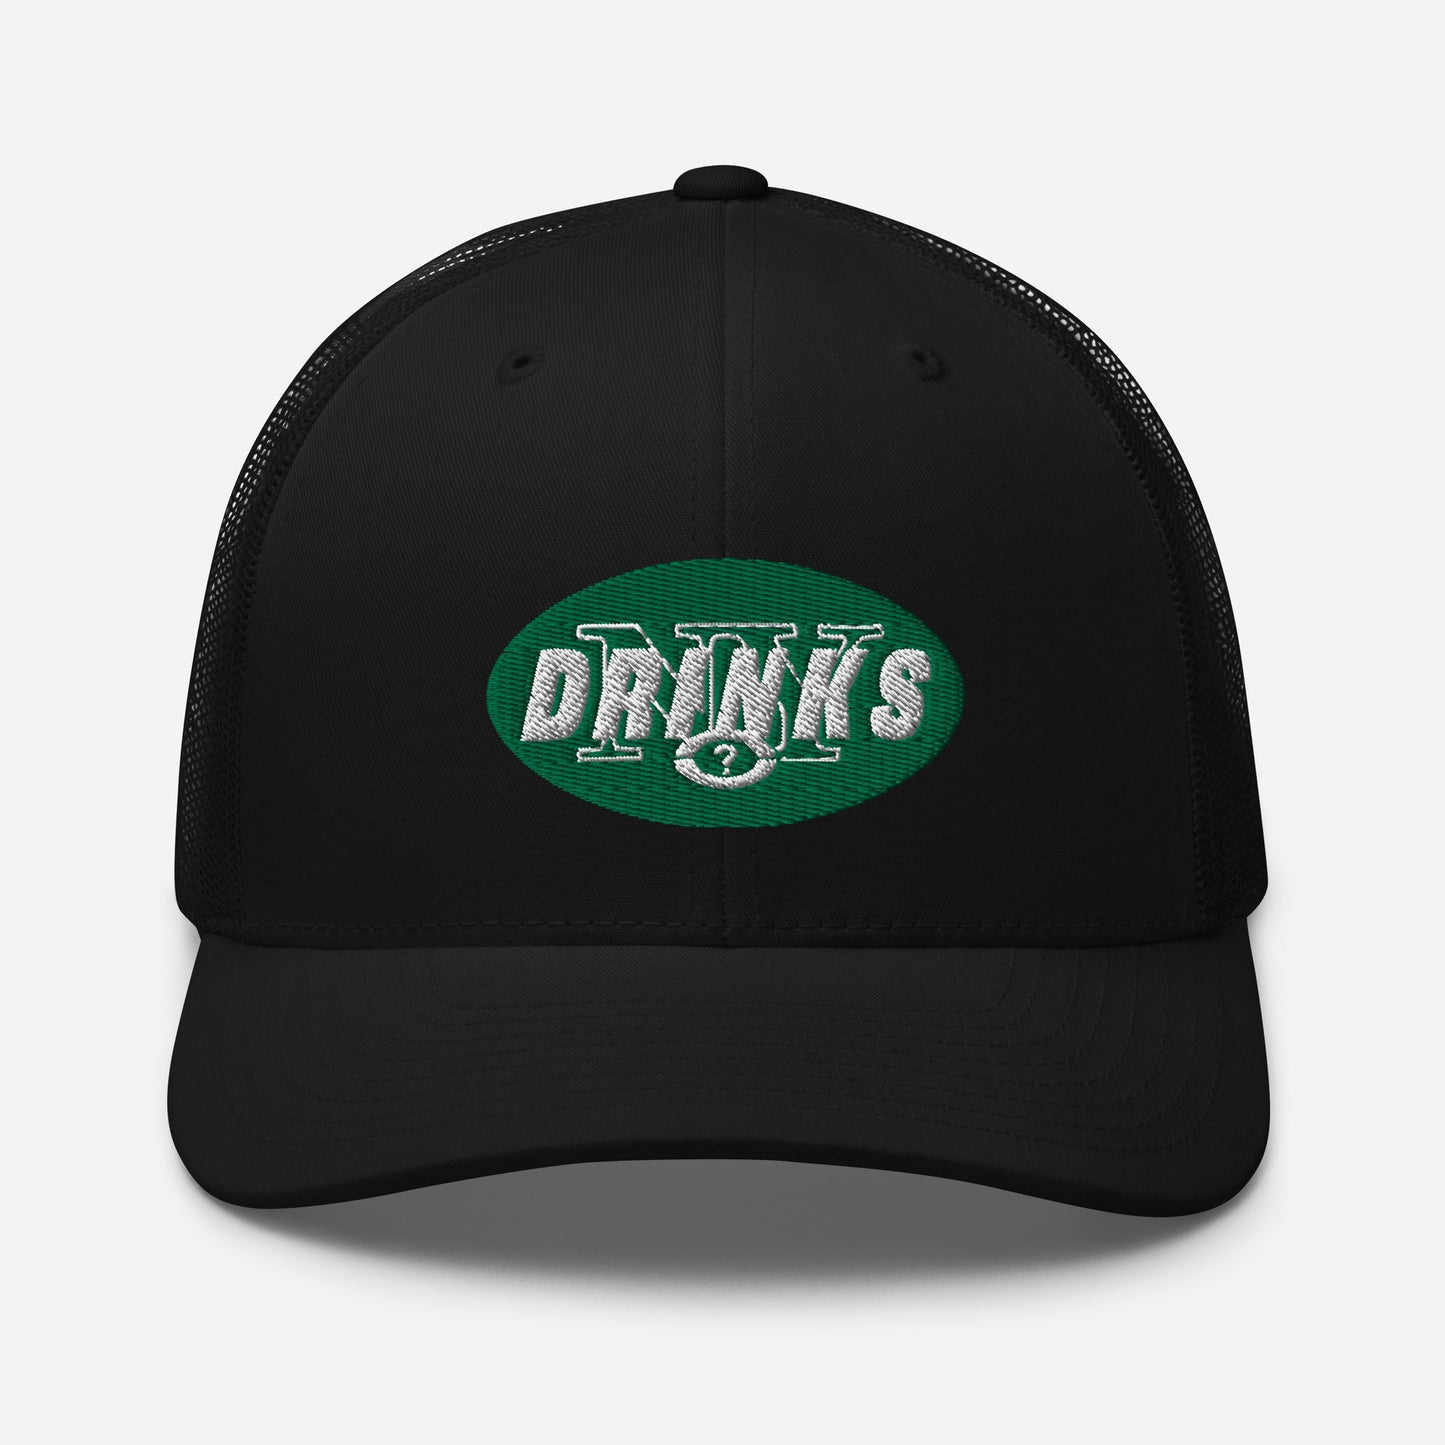 Drinks Trucker Cap